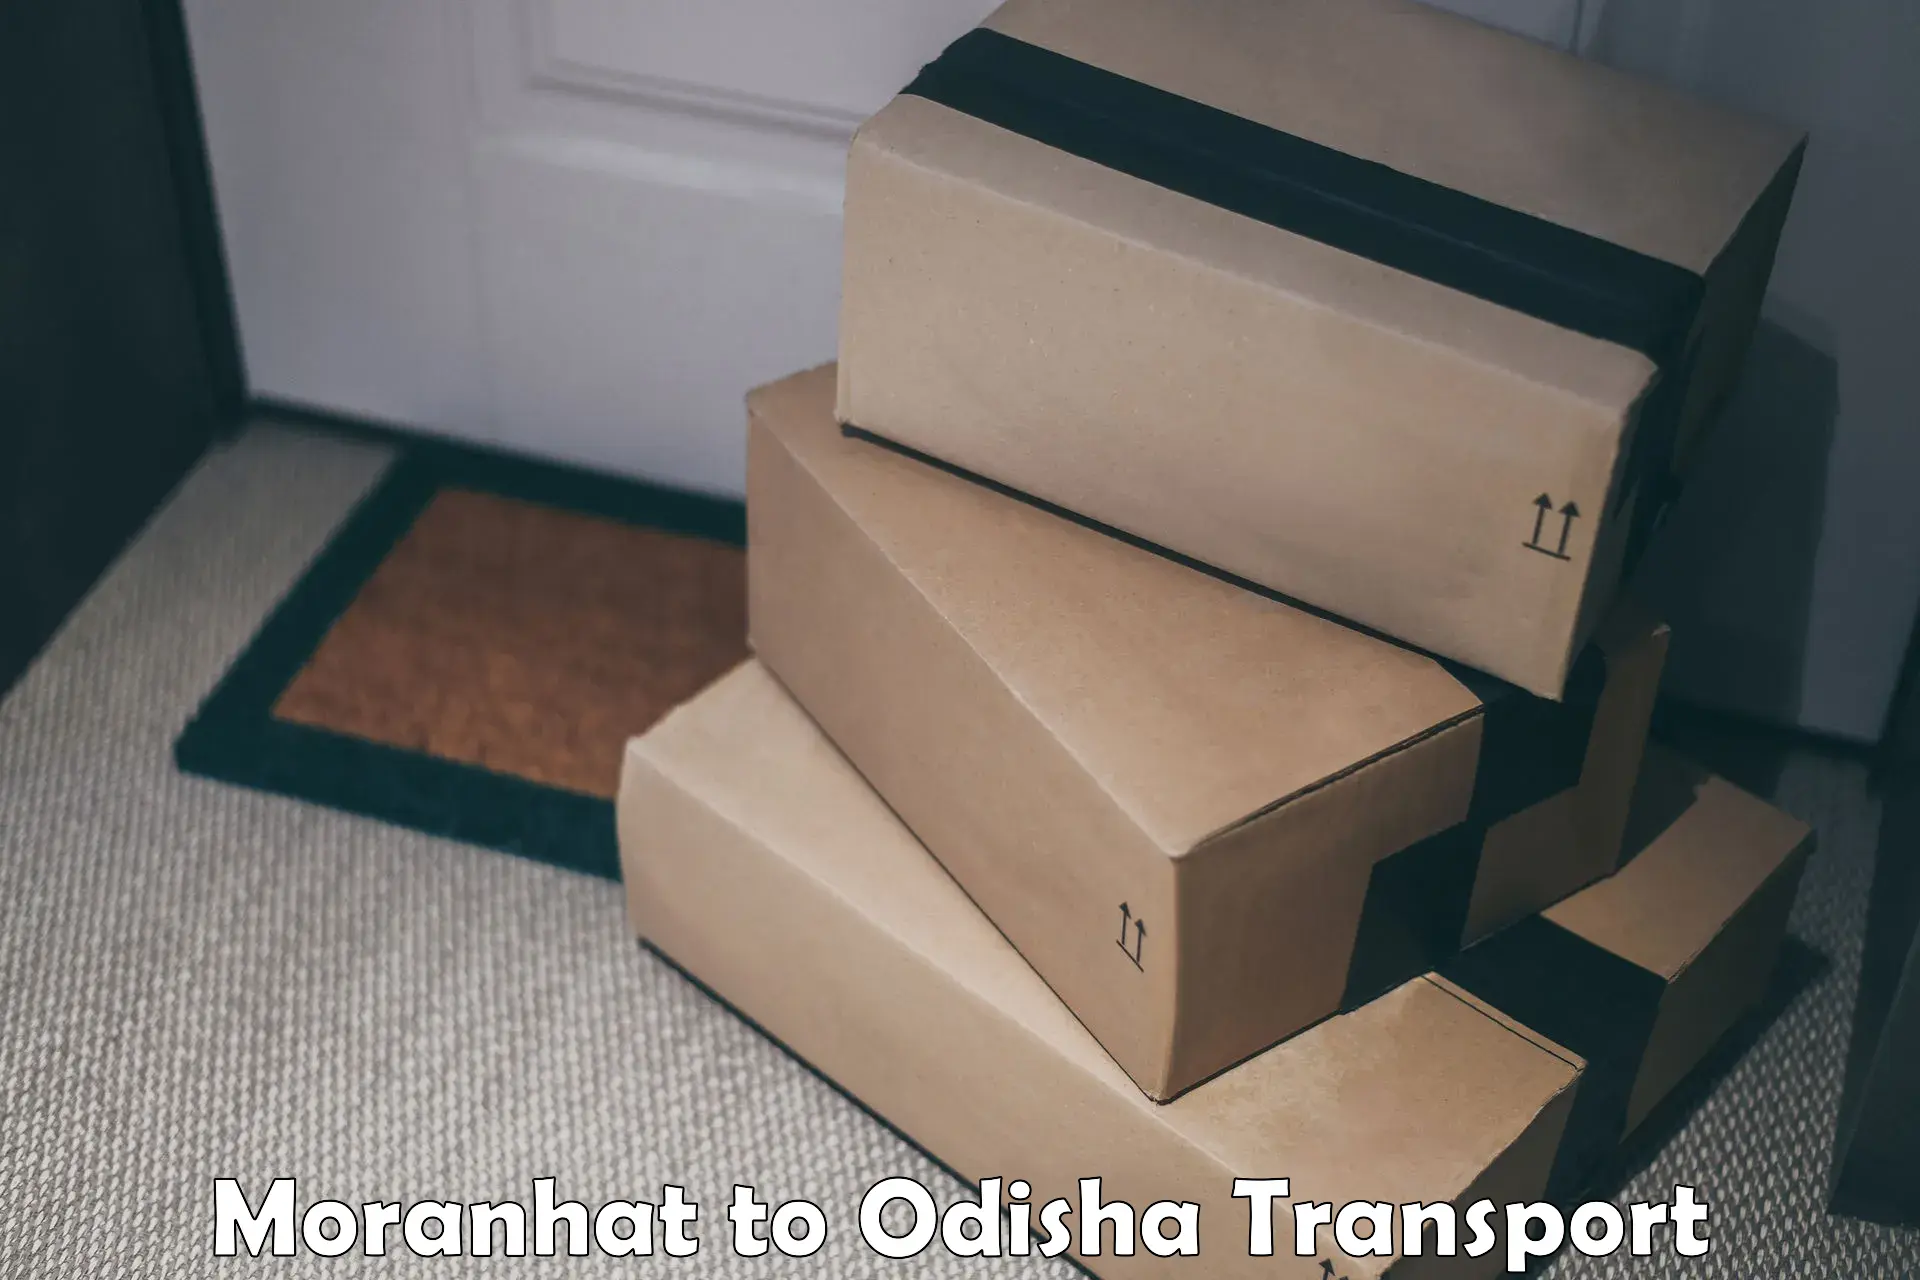 Furniture transport service Moranhat to Odisha